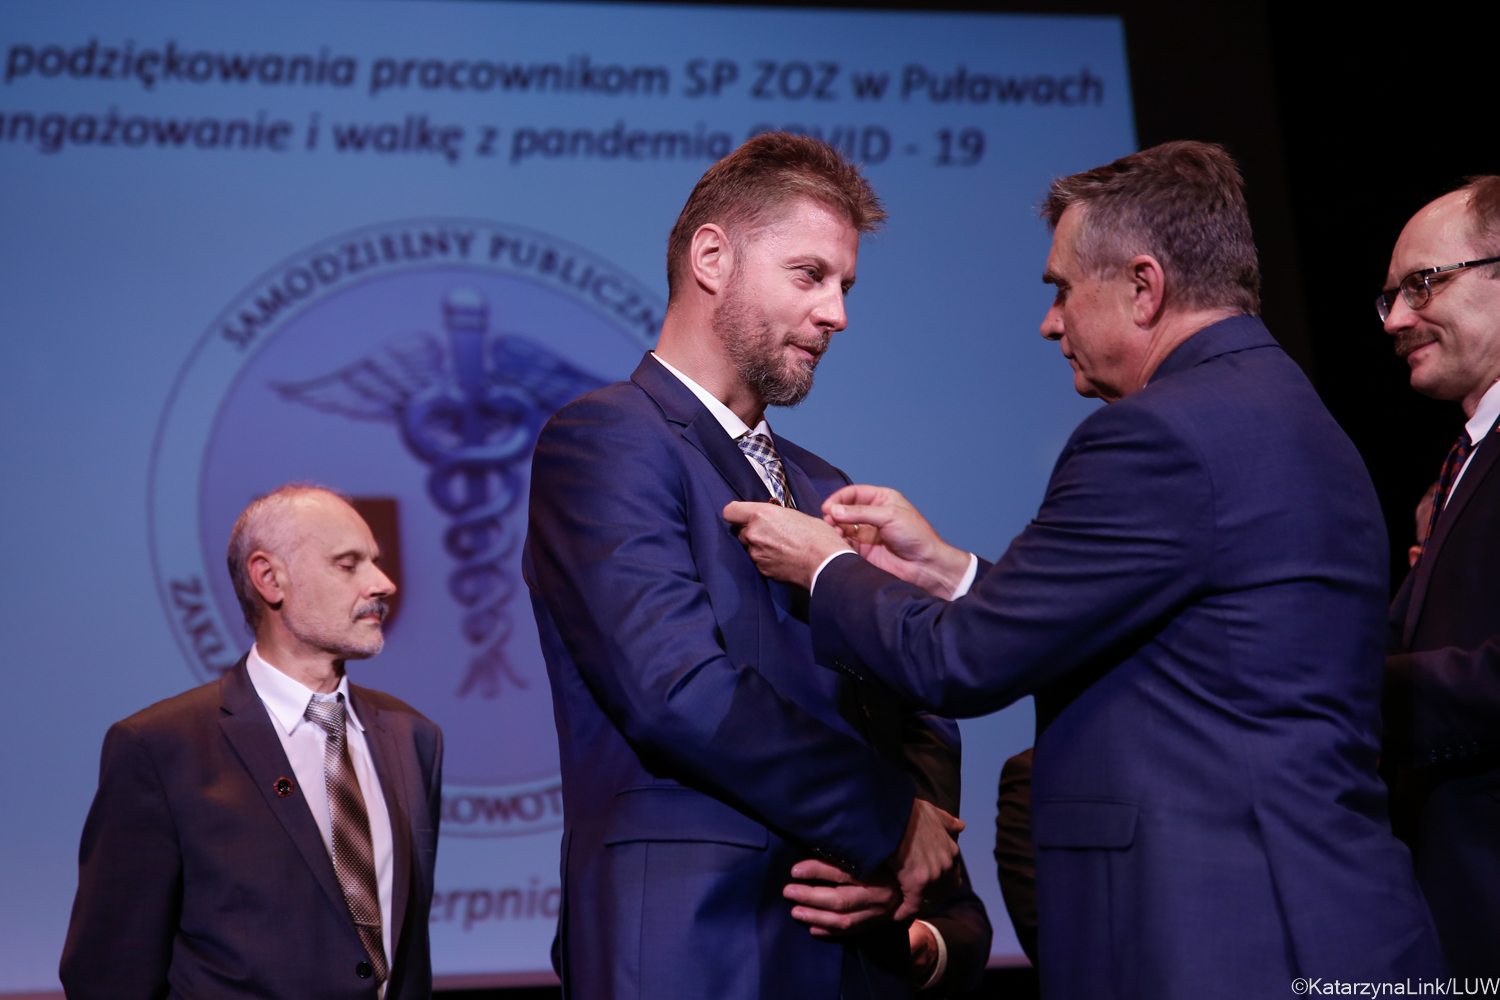 Odznaki za Zasługi dla Ochrony Zdrowia dla pracowników szpitala w Puławach. Za walkę z pandemią